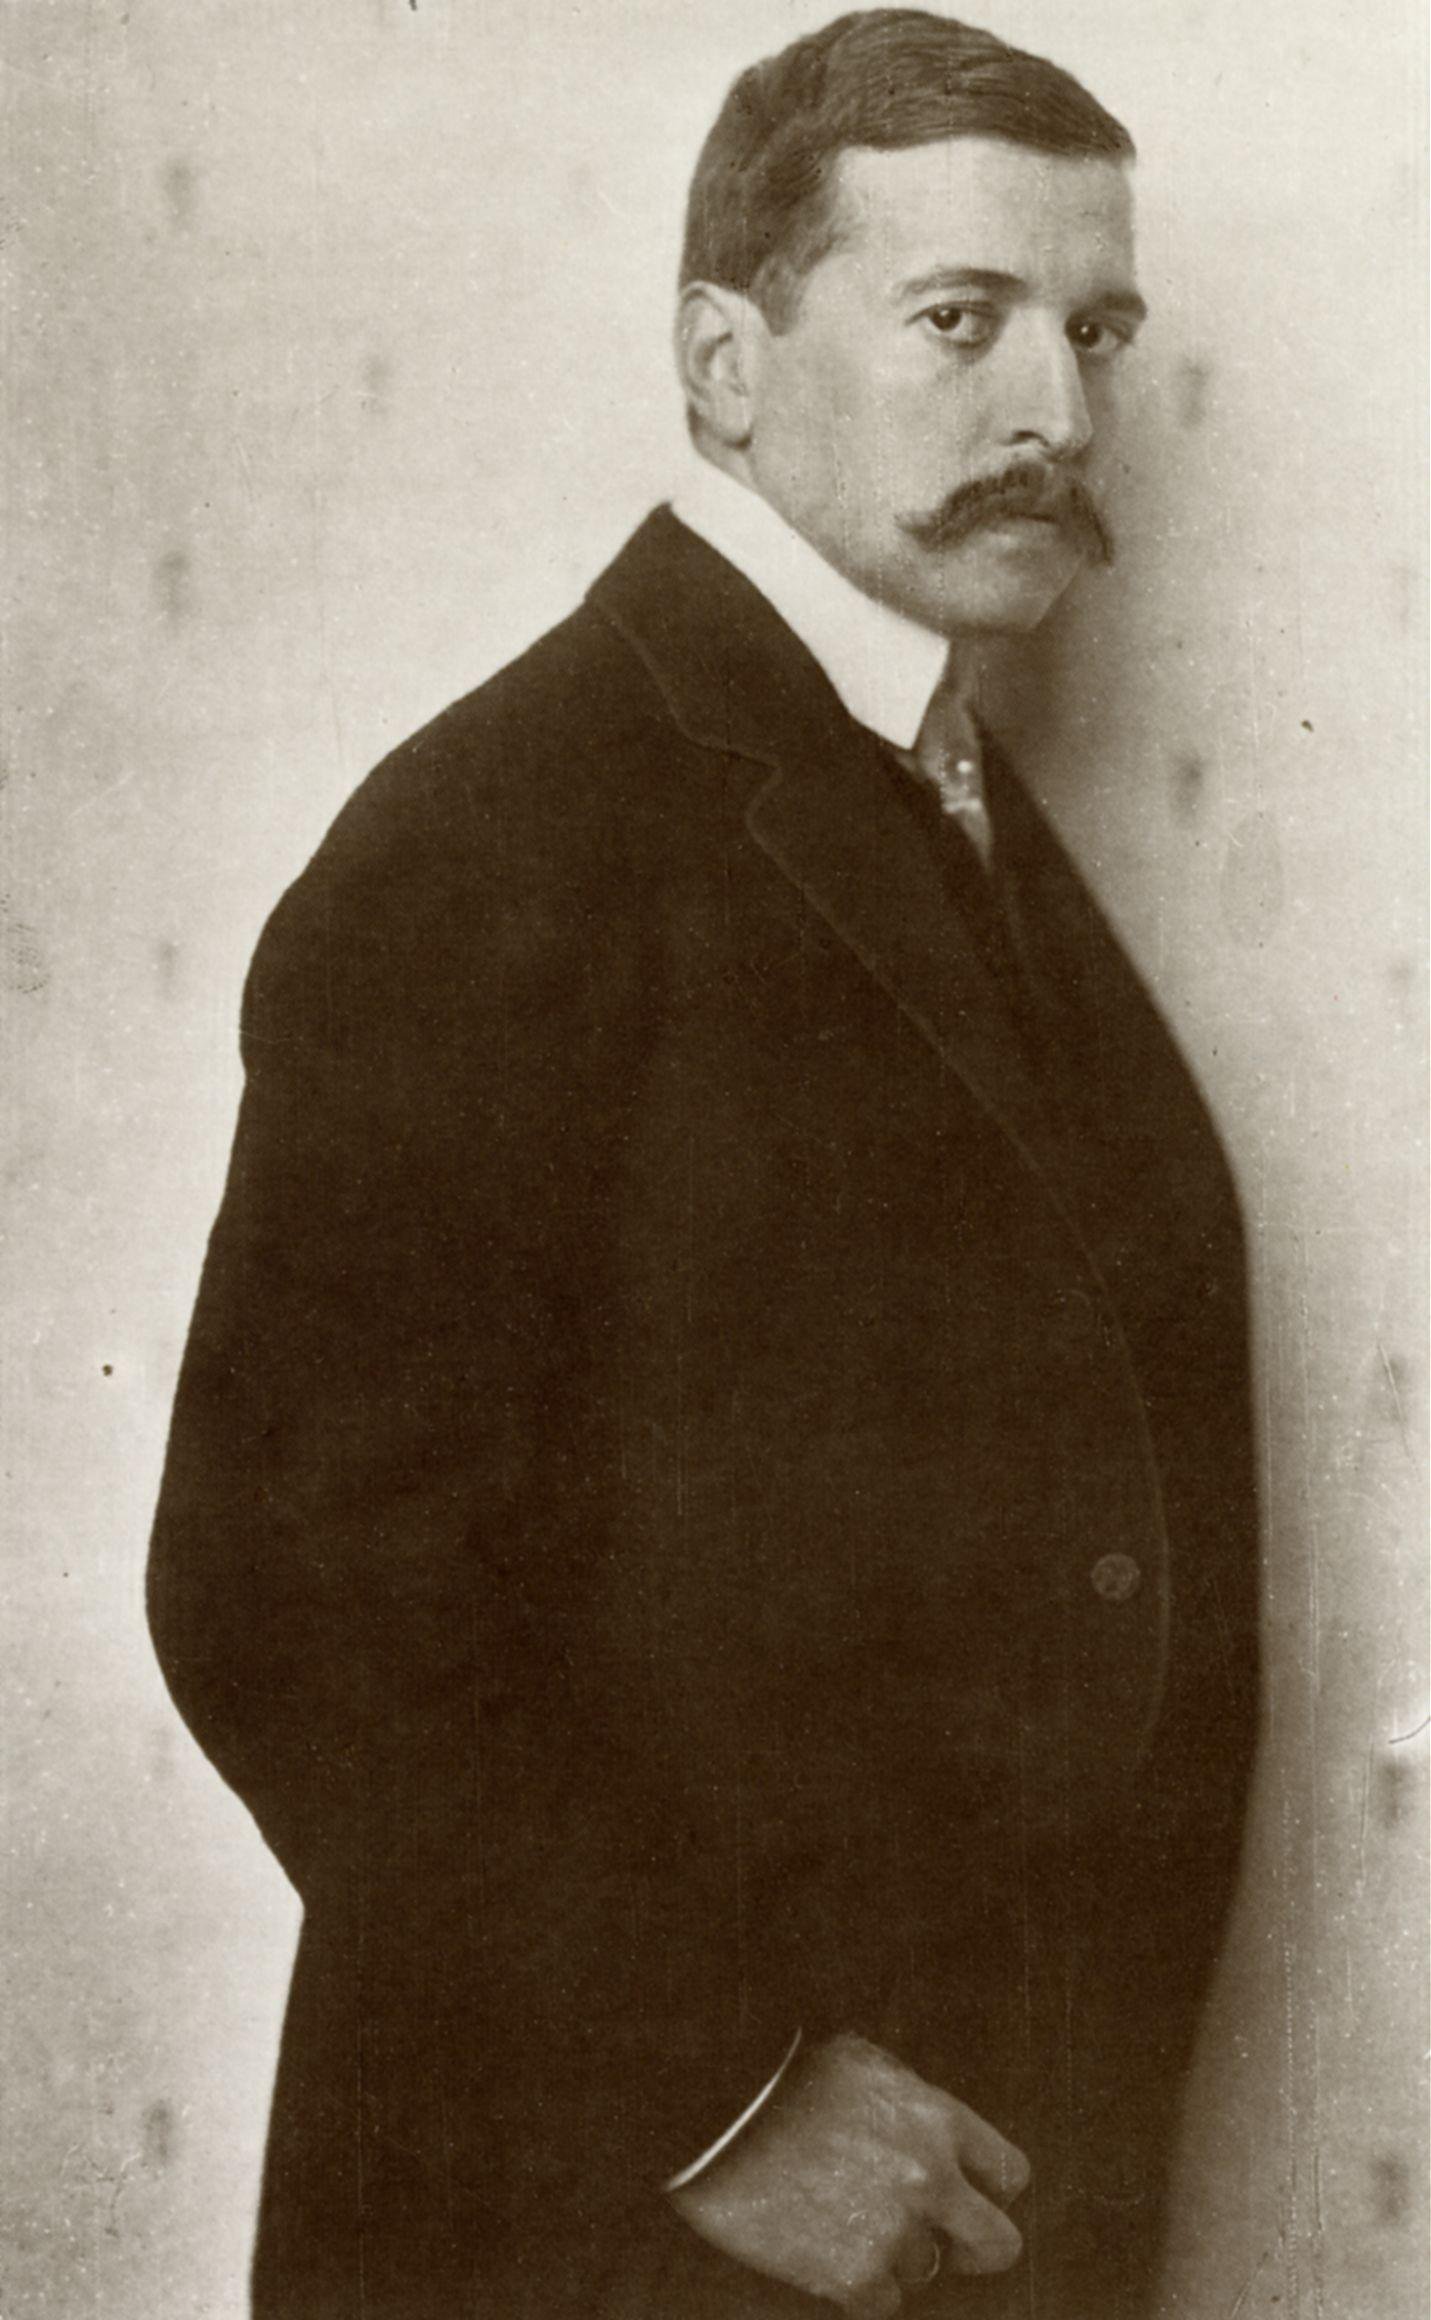 Nicola_Perscheid_-_Hugo_von_Hofmannsthal_1910.jpg